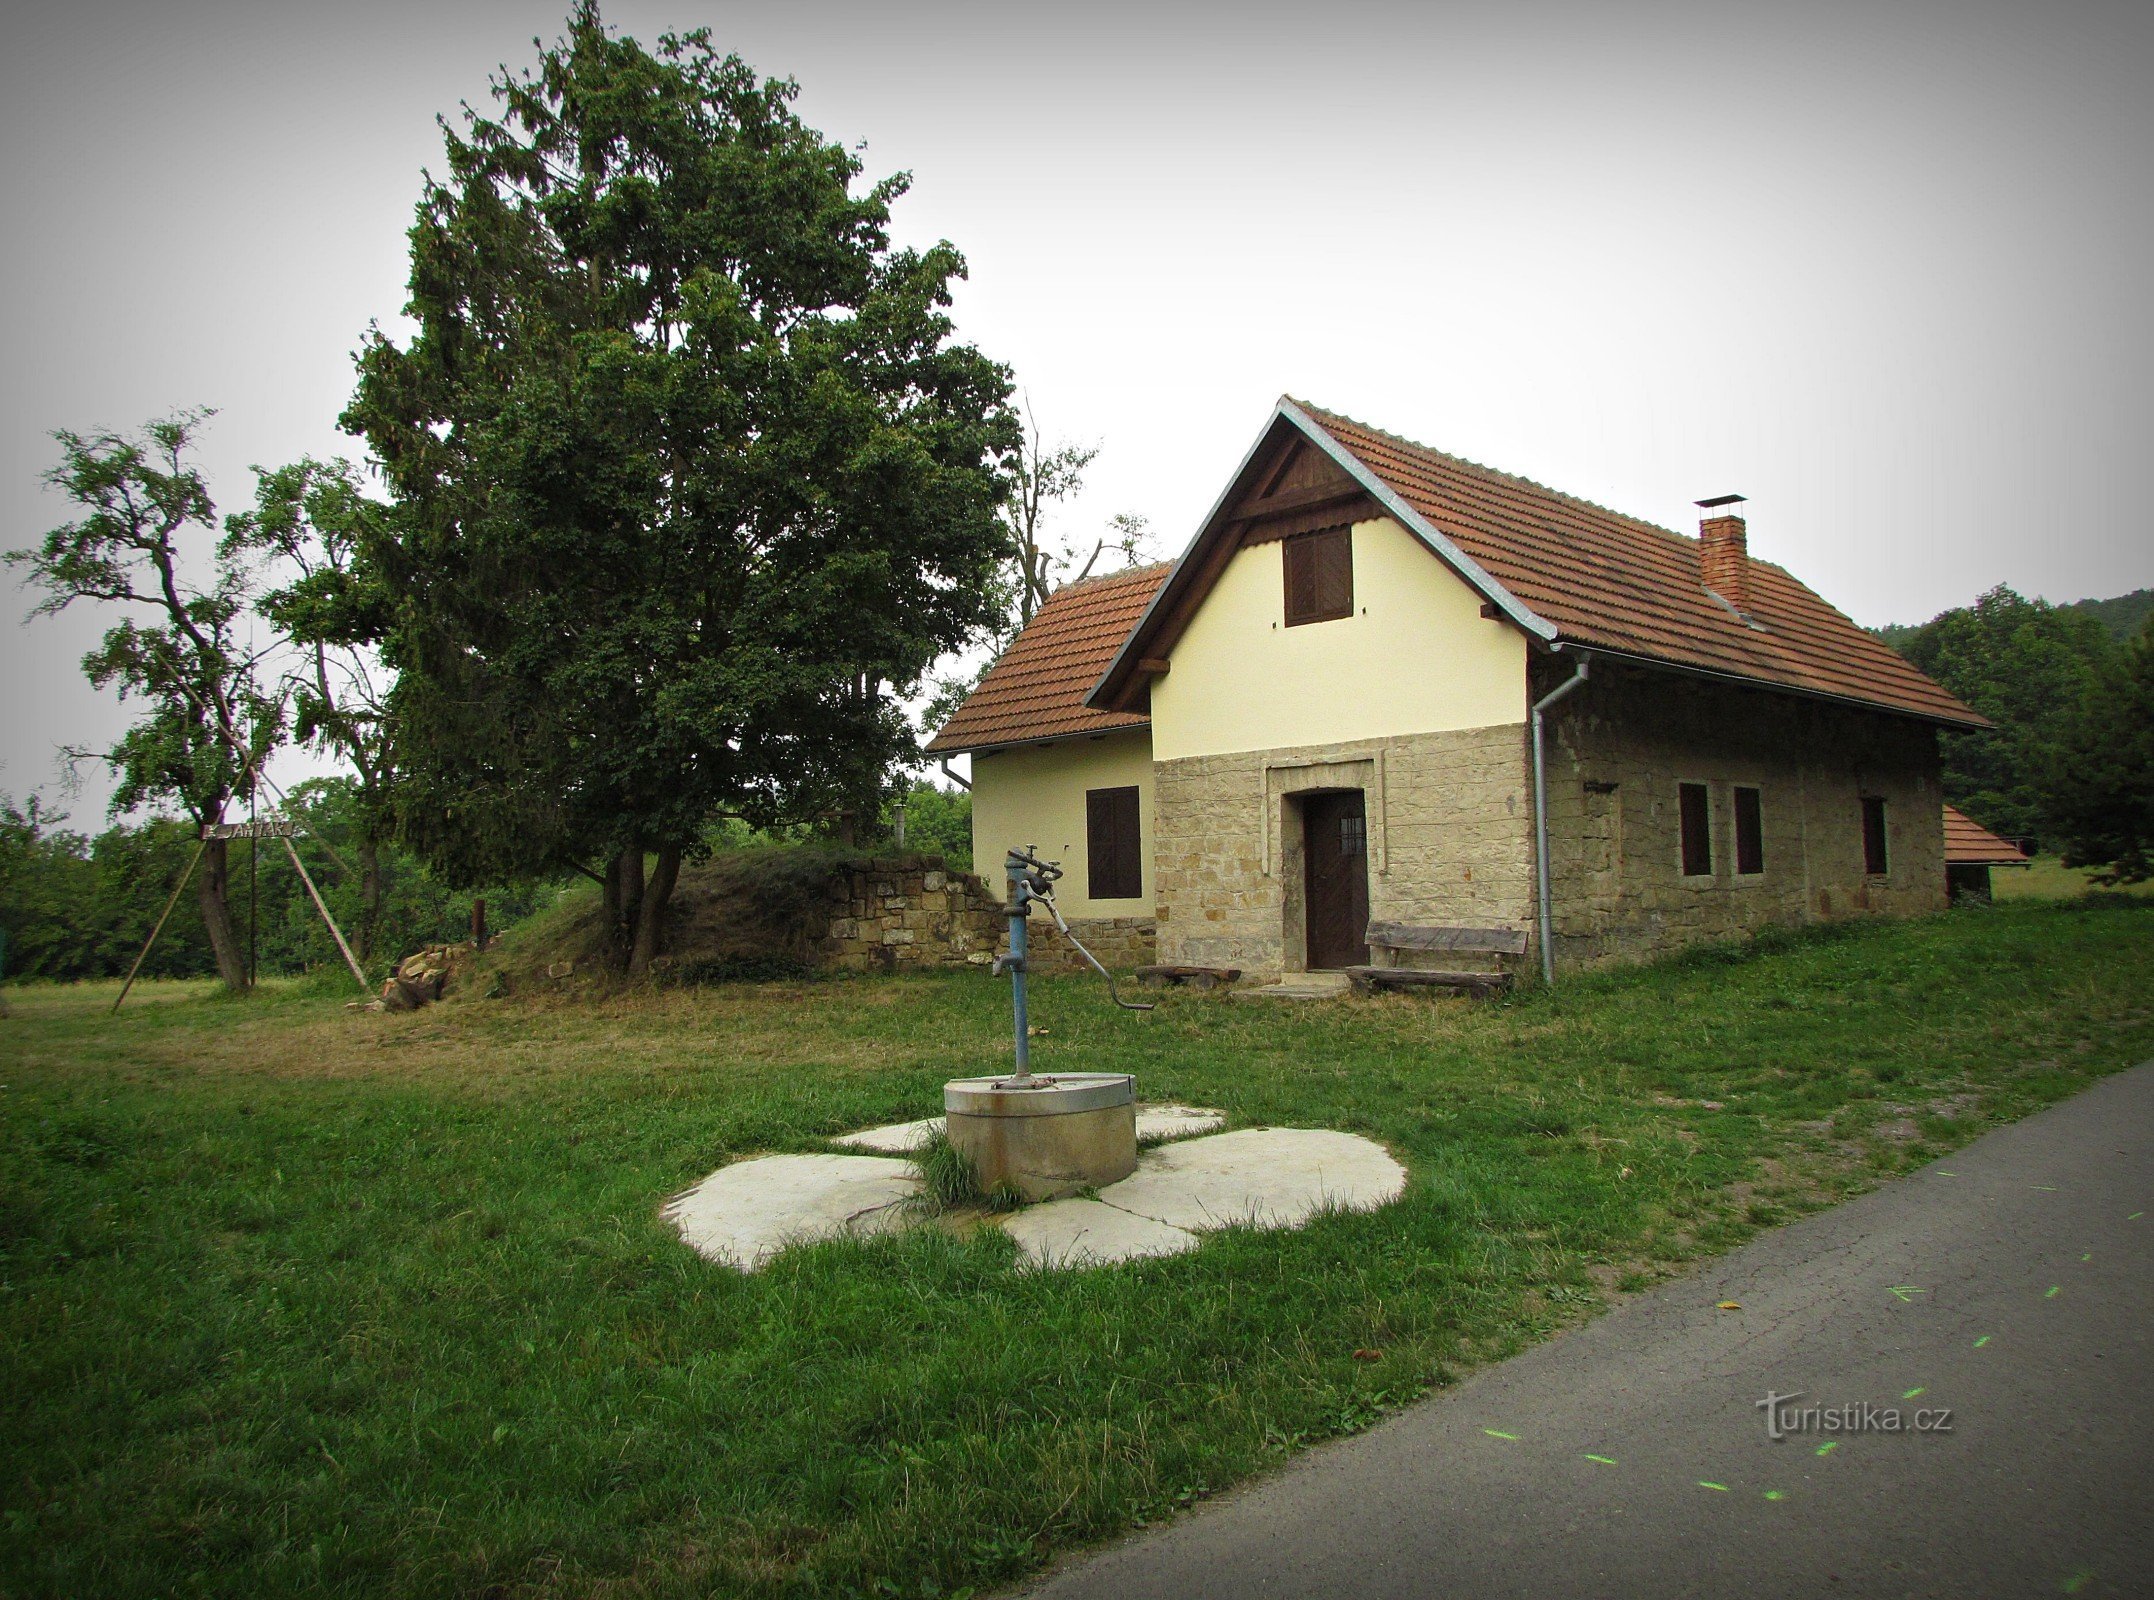 Holiday cottage Jantar near Vřesovice